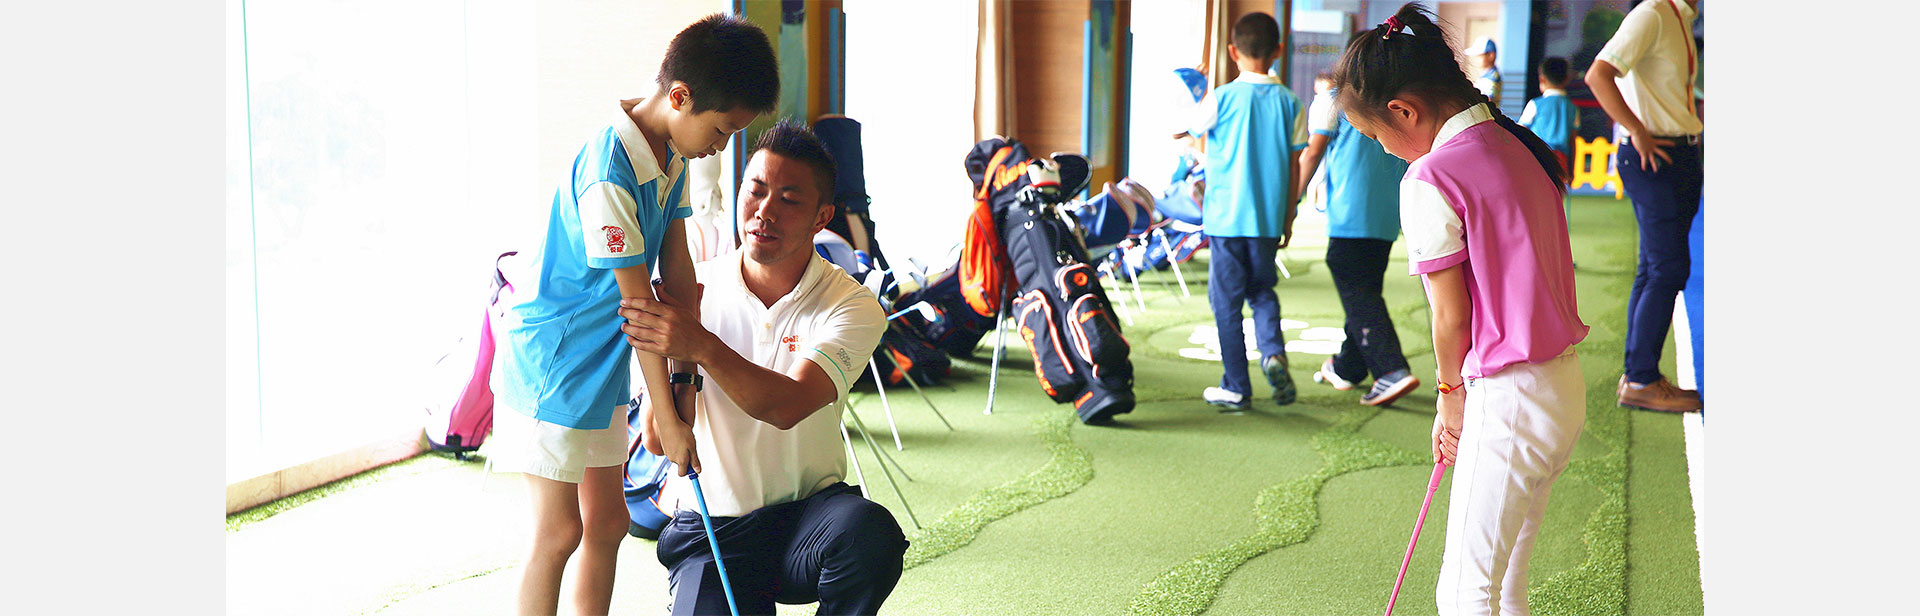 小孩在悦球学高尔夫.jpg